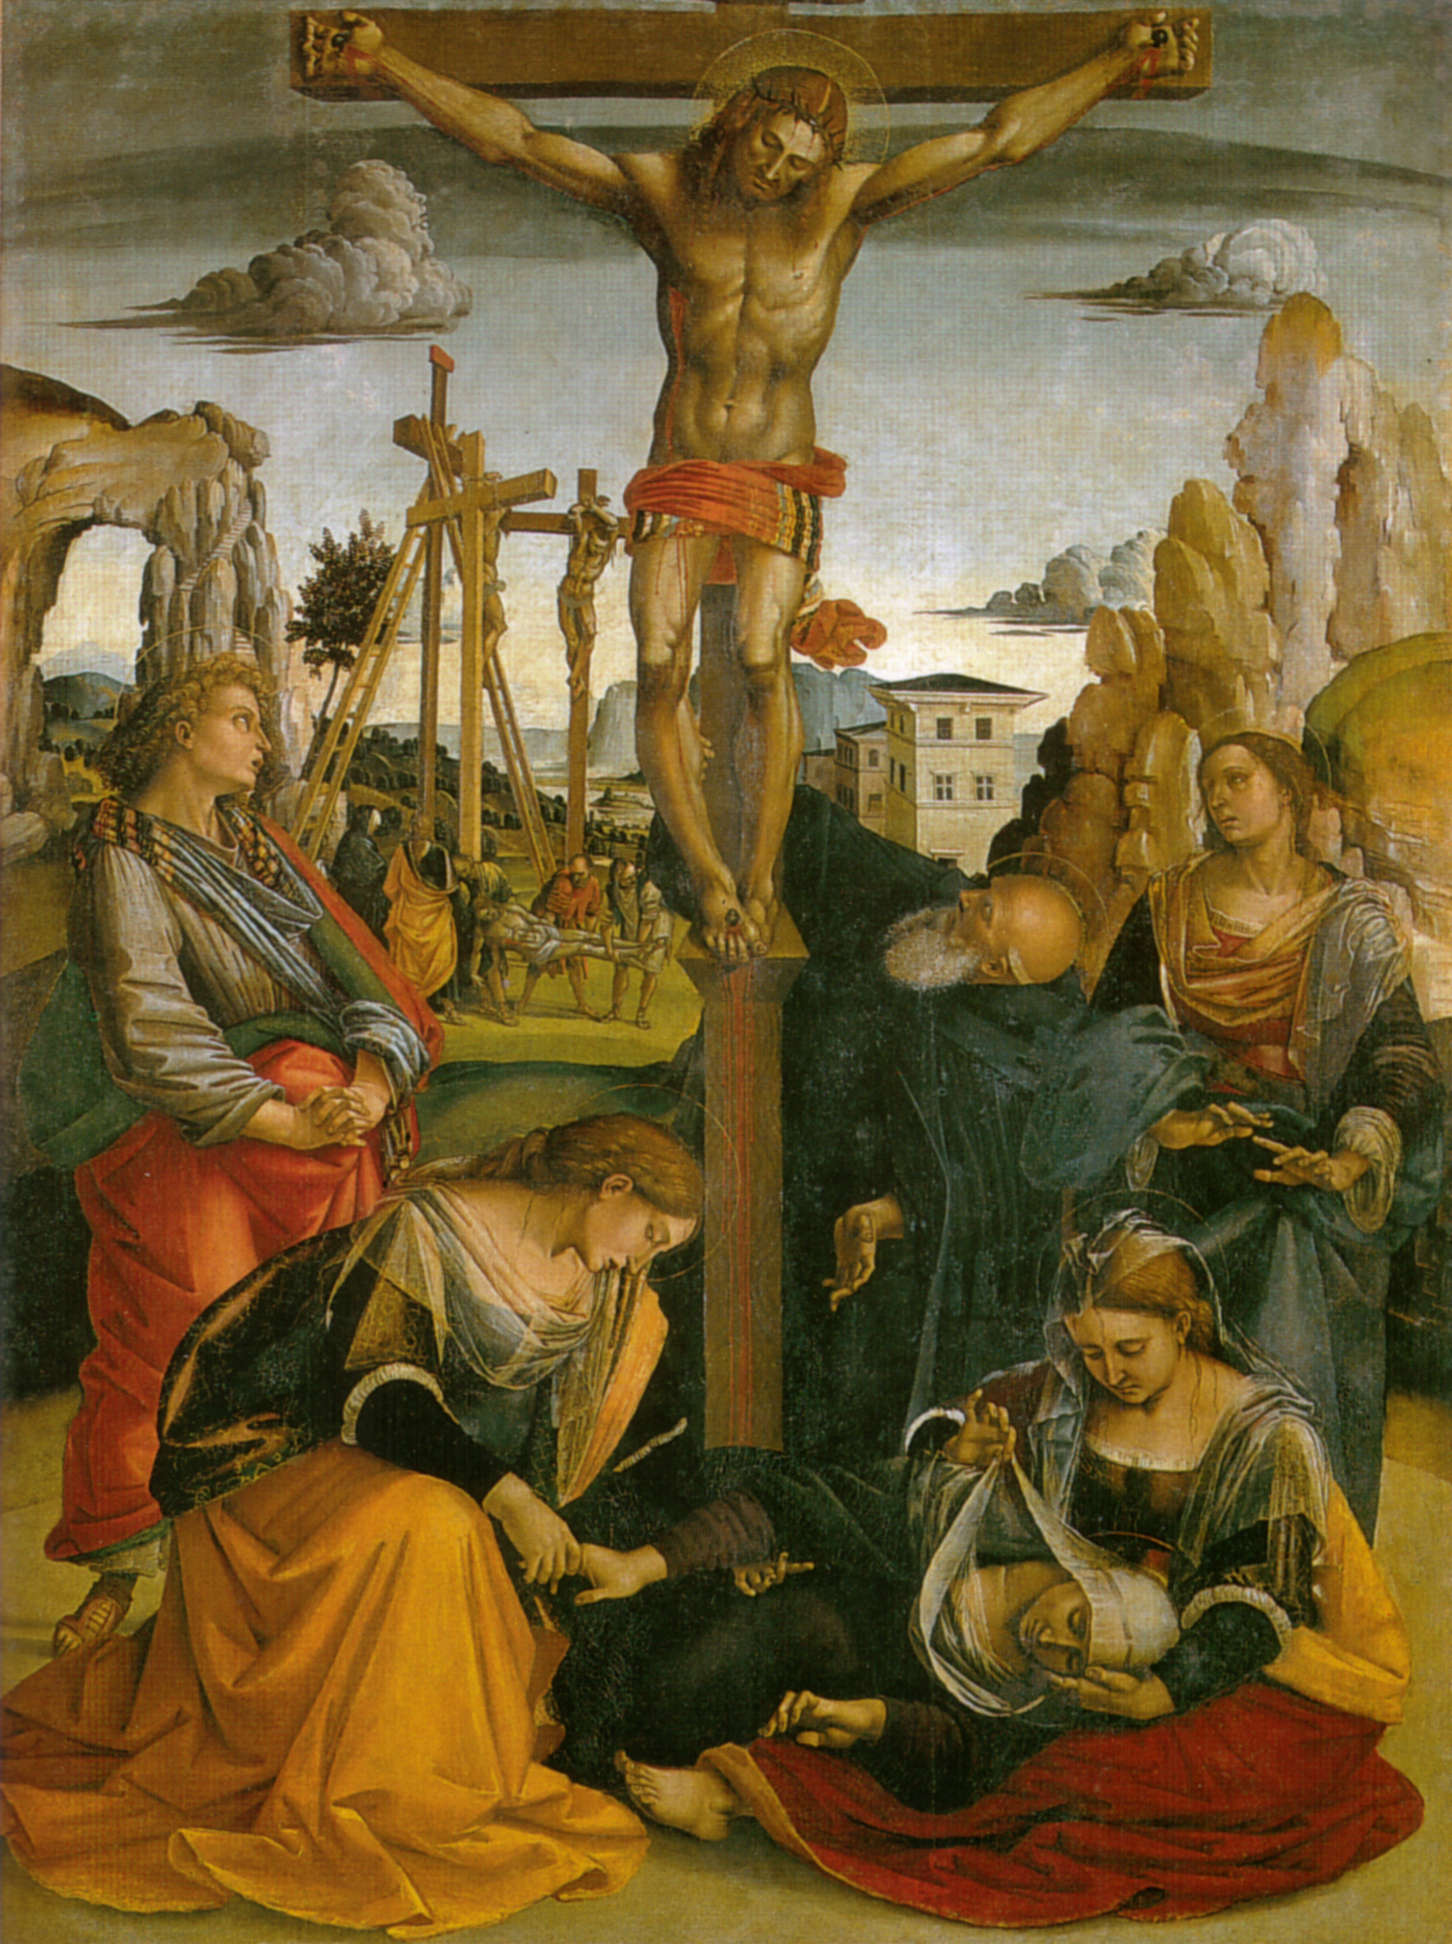 Luca Signorelli, Stendardo della Crocifissione, recto (c. 1502-1505; tempera on canvas, 212 x 157 cm; Sansepolcro, church of Sant'Antonio Abate)